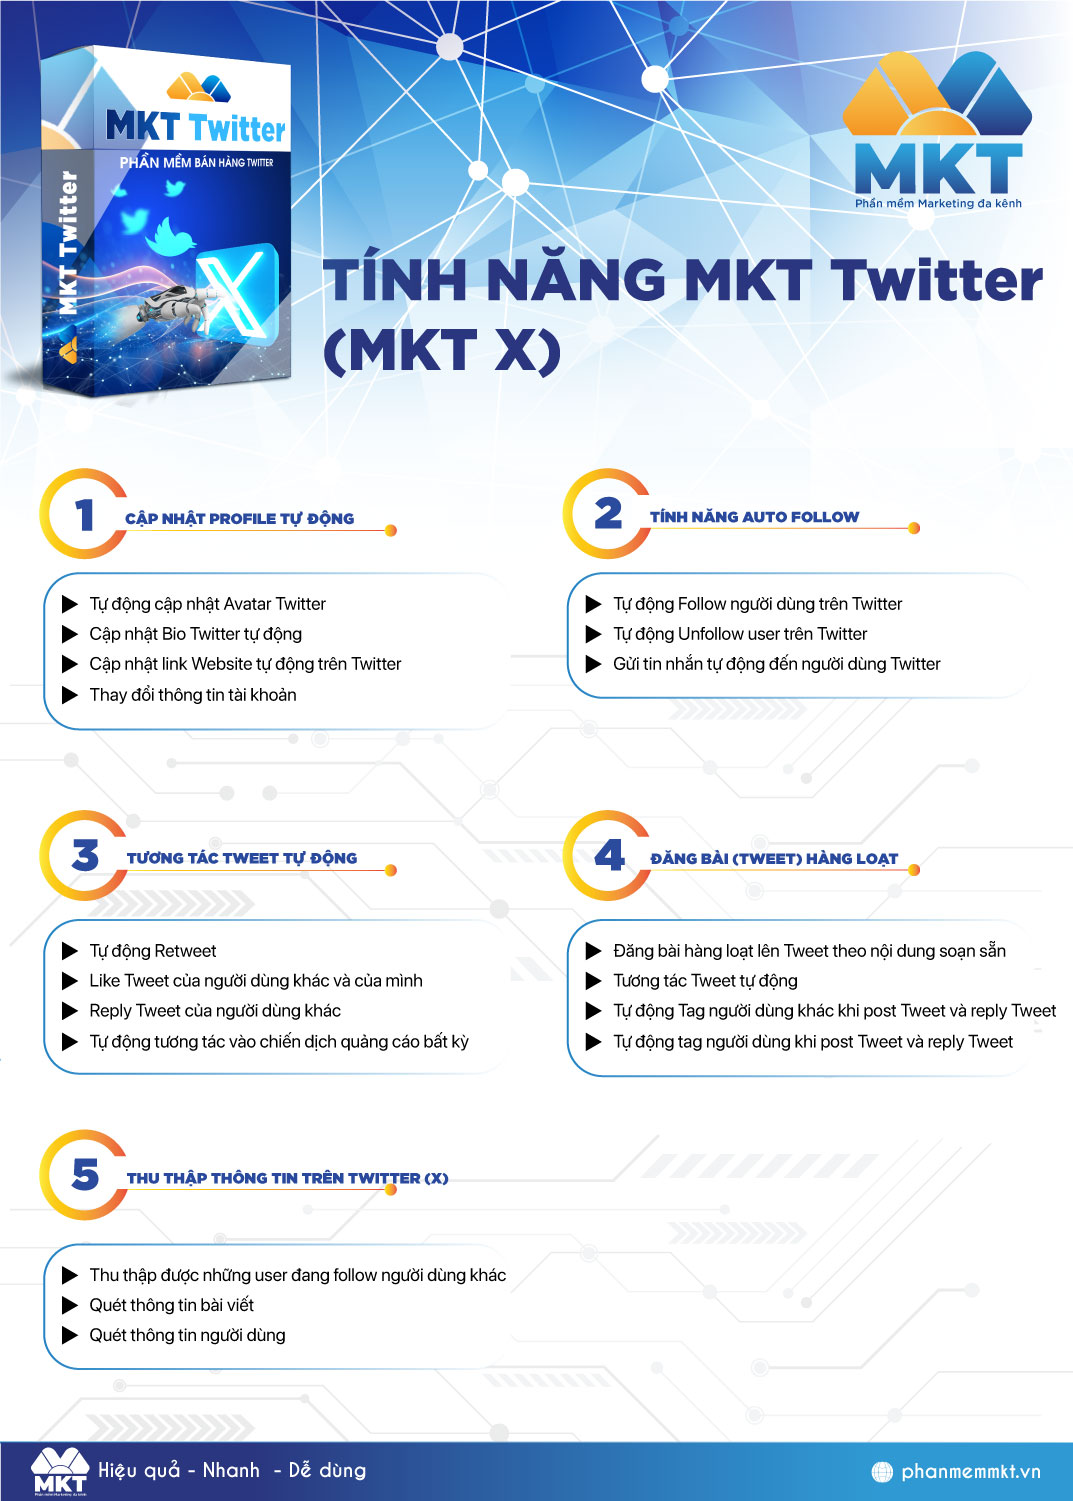 Tính năng chính của MKT Twitter